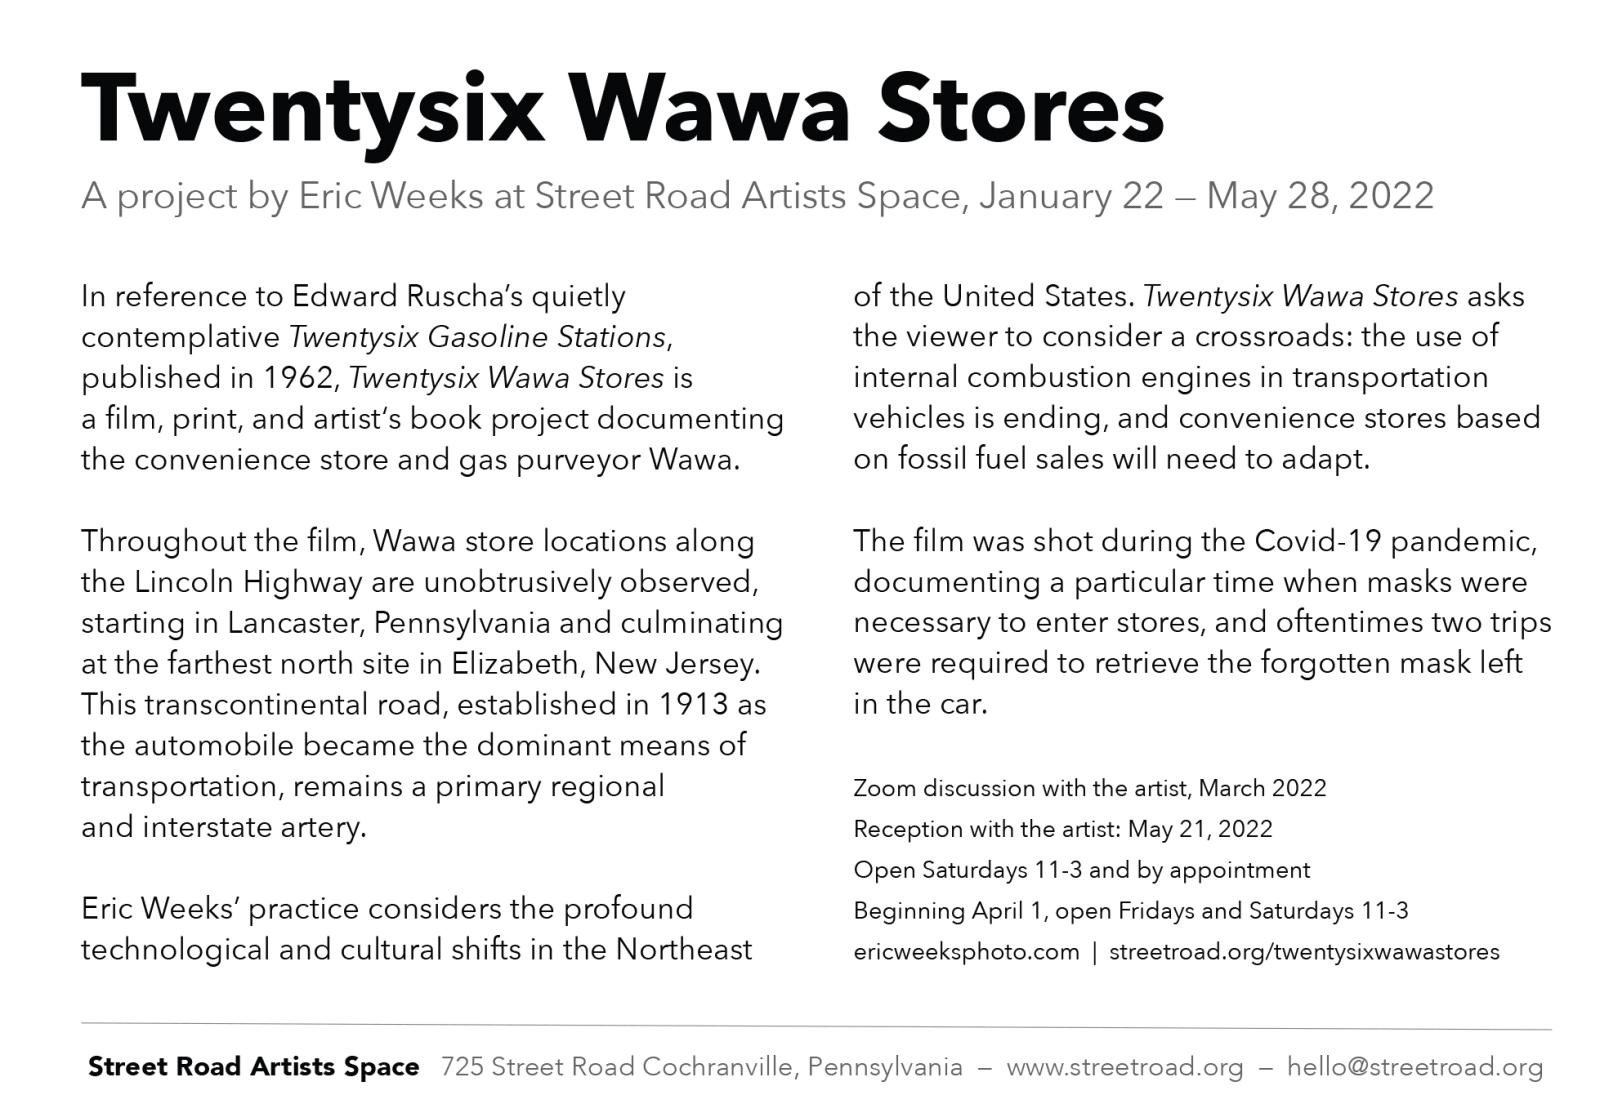 Thumbnail of TWENTYSIX WAWA STORES